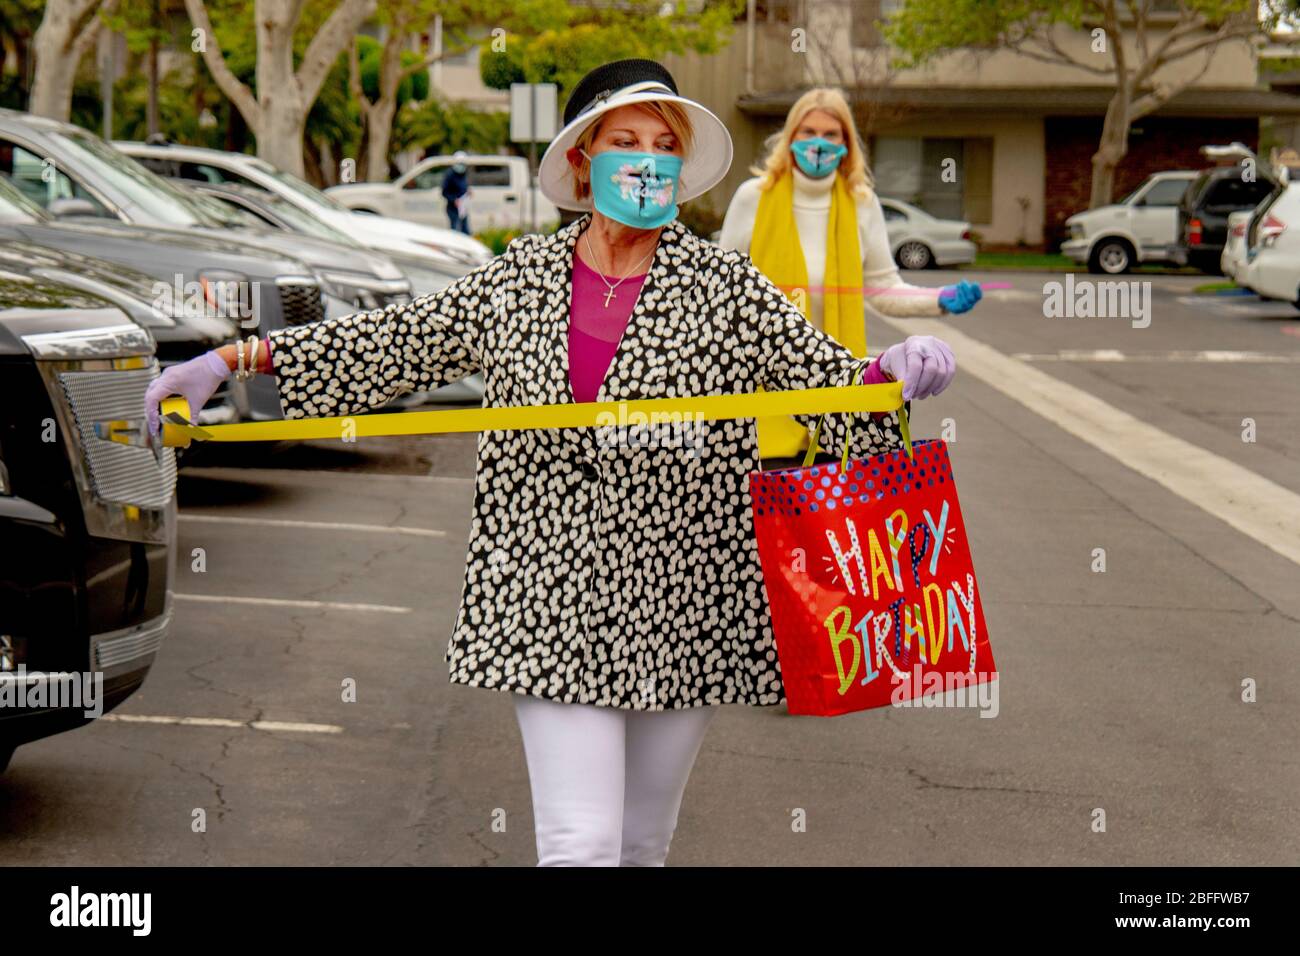 Freiwillige tragen wegen des Ausbruchs des Coronavirus oder COVID-19 eine Sicherheitsmaske, während sie ankommende Autos bei einem Drive-in-Osterdienst in einem Büropark in Santa Ana, CA, mit Bändern schmücken. Stockfoto